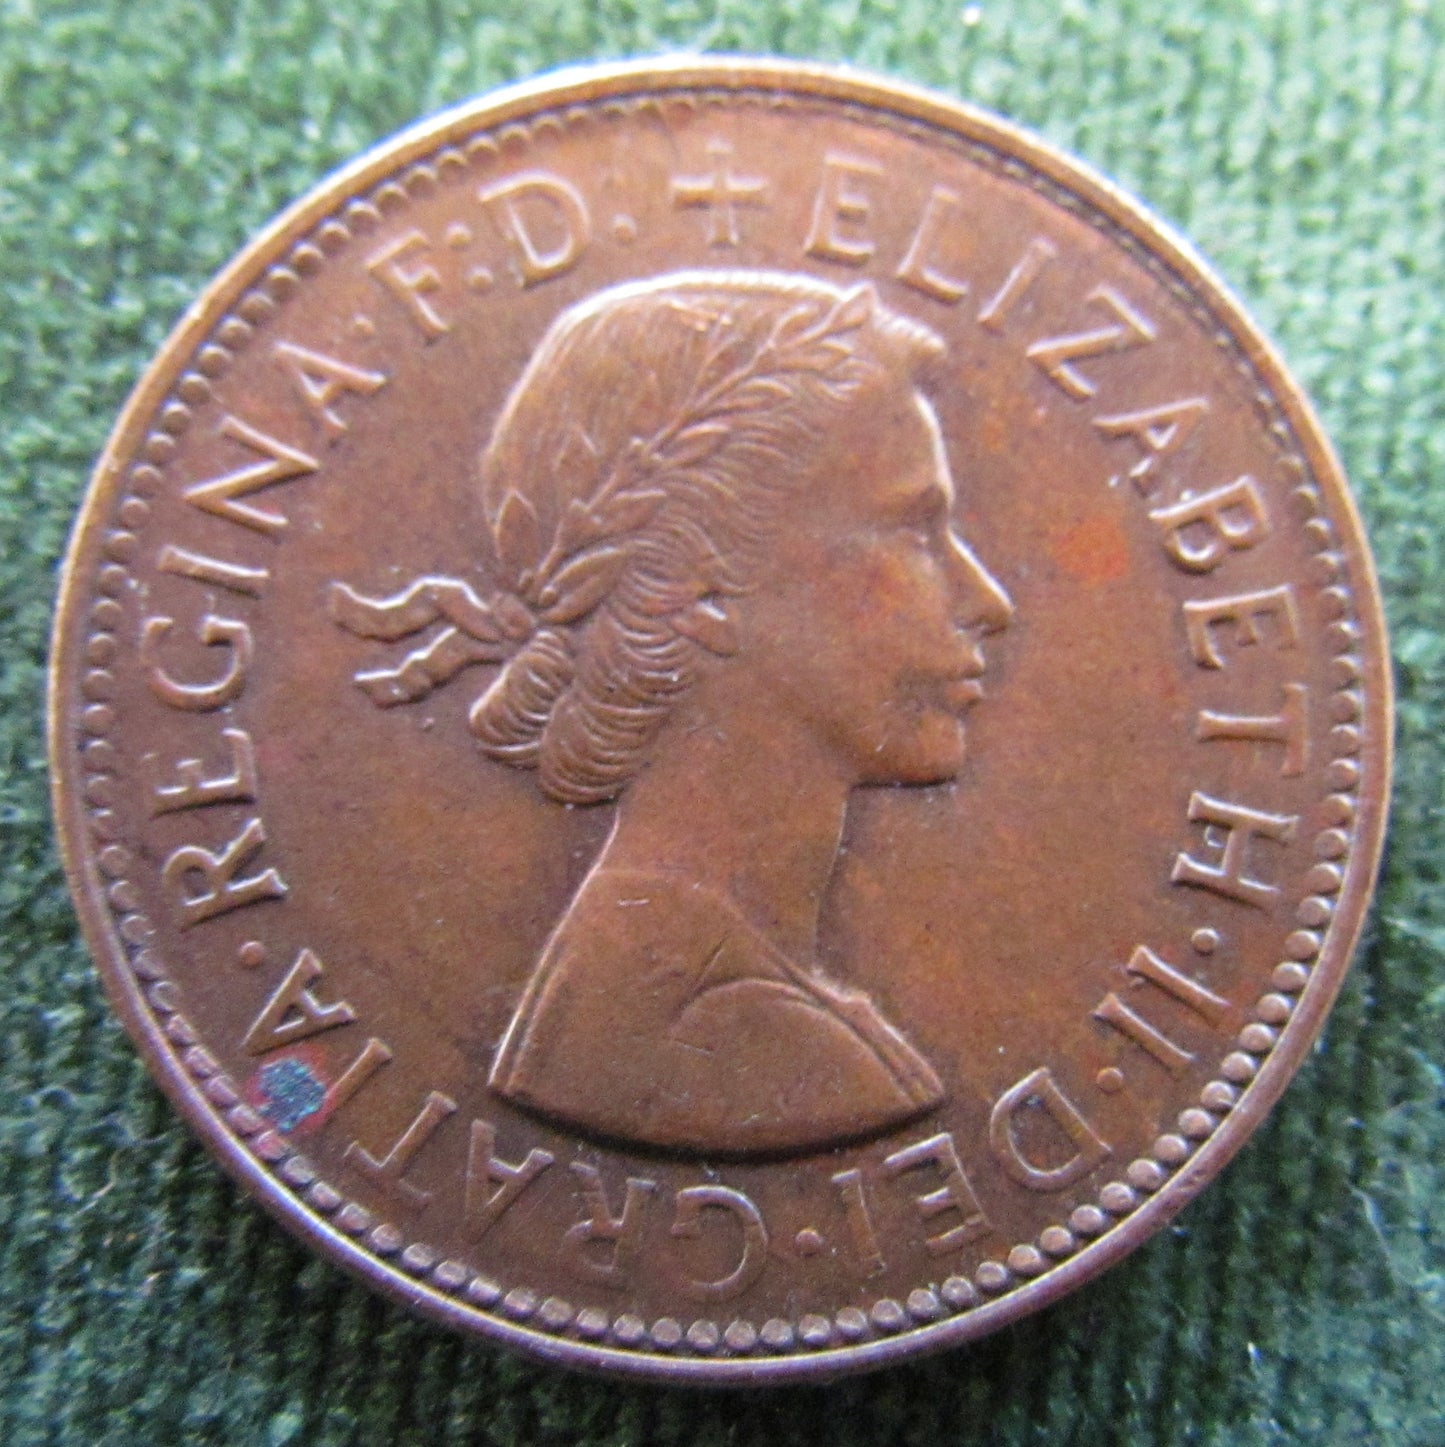 Australian 1961 1/2d Half Penny Queen Elizabeth II Coin - Variety Die Error